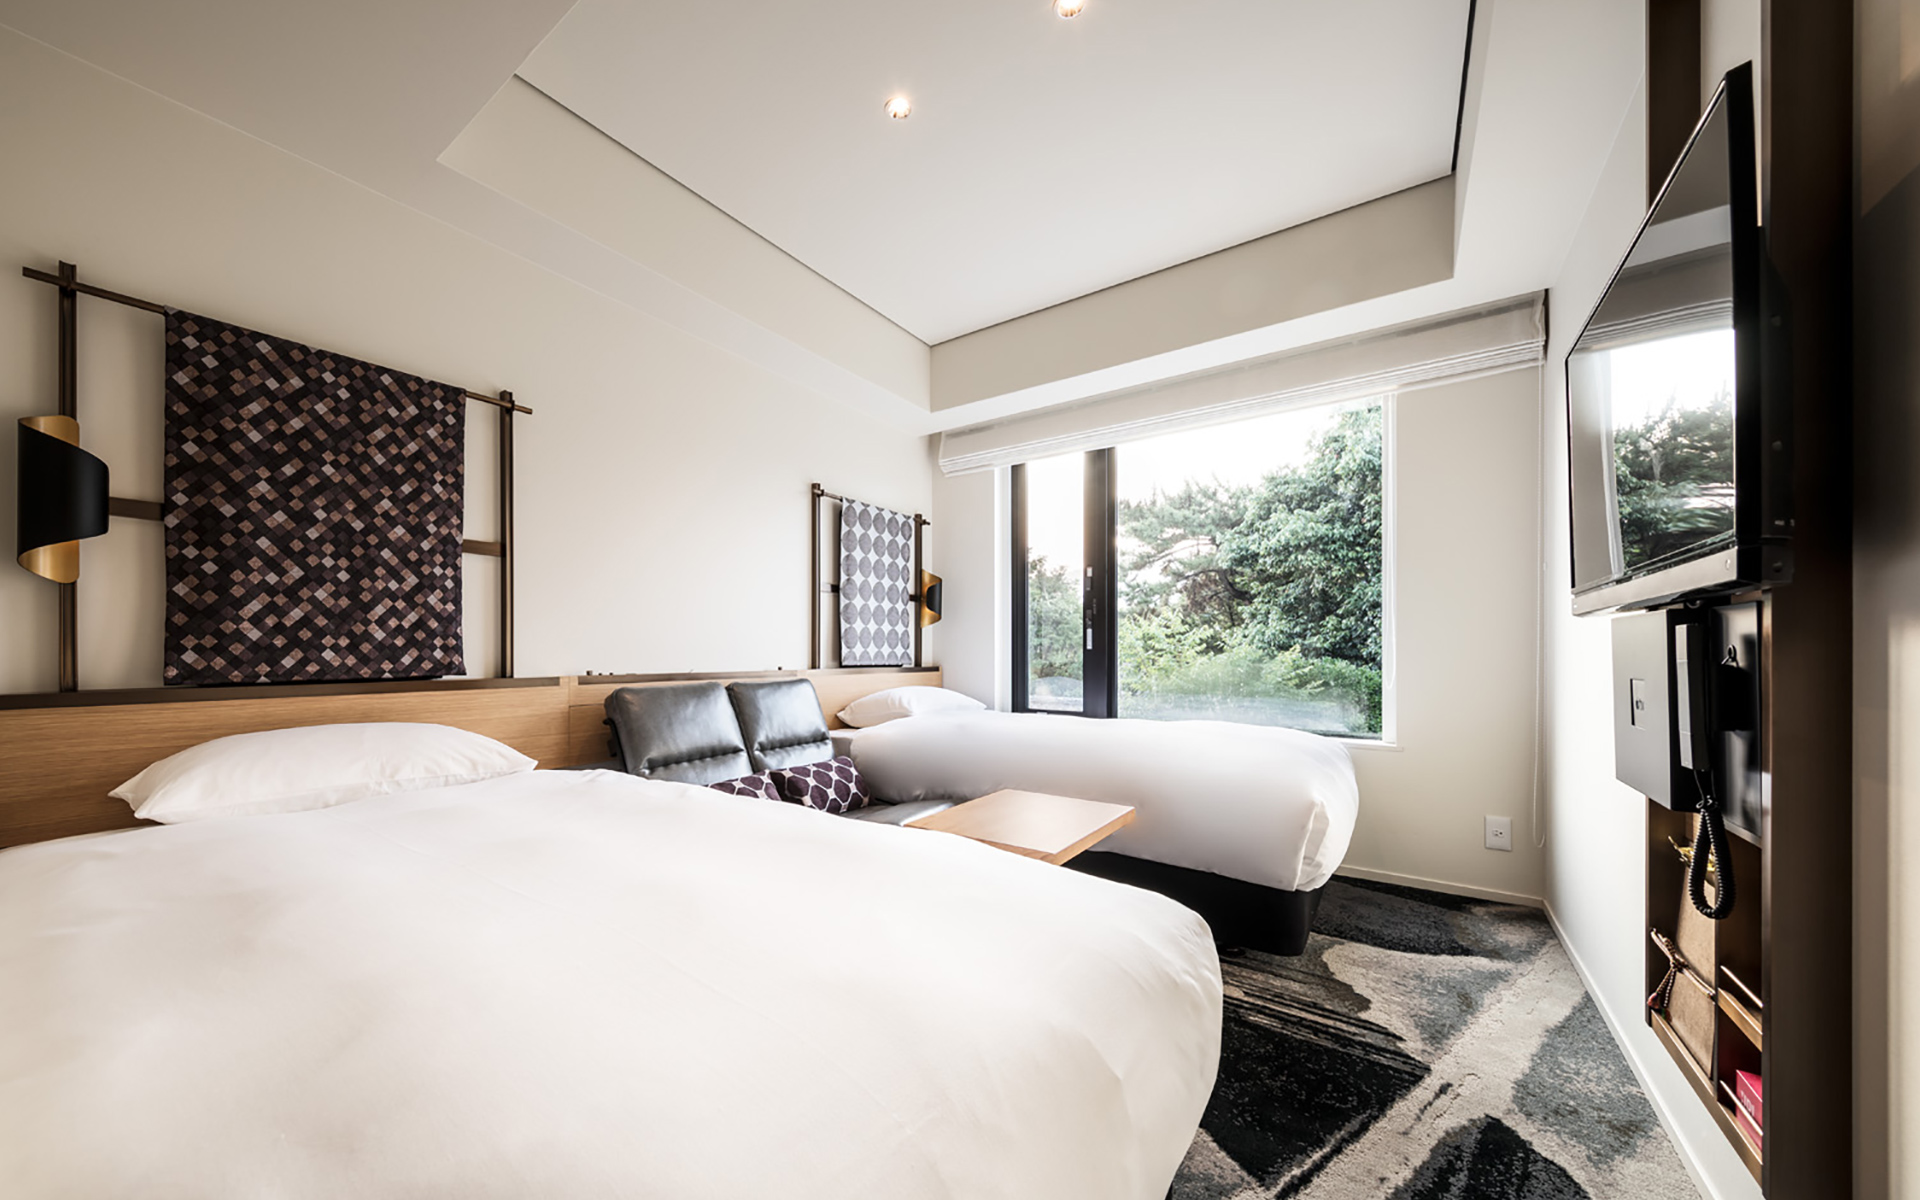 「京都グランベルホテル」の客室の例。テレビパネルは掛け軸のイメージでデザイン（写真：Nacasa & Partners）